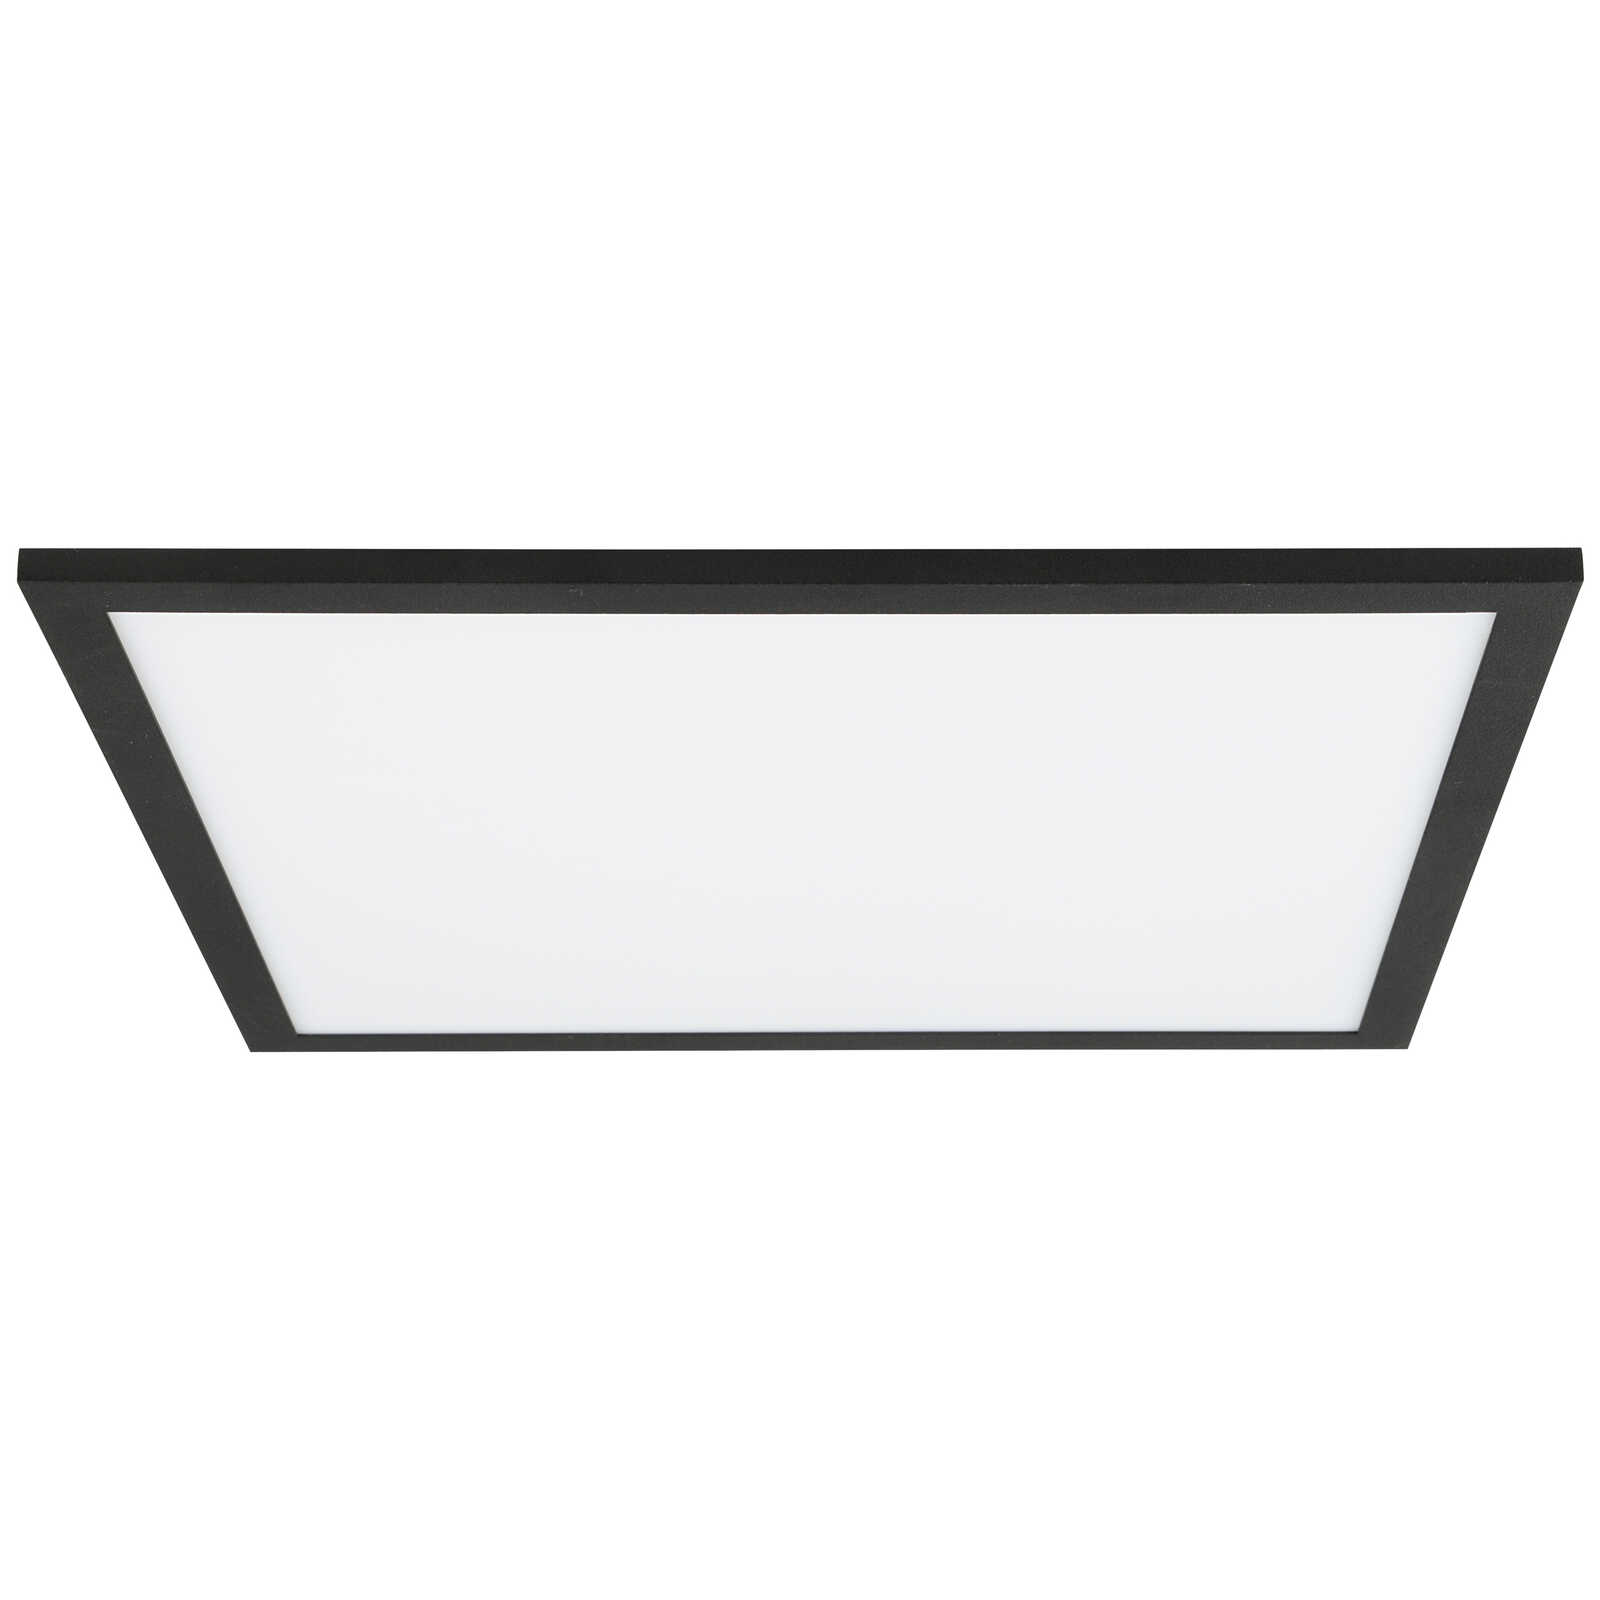             Plastic ceiling light - Constantin 2 - Black
        